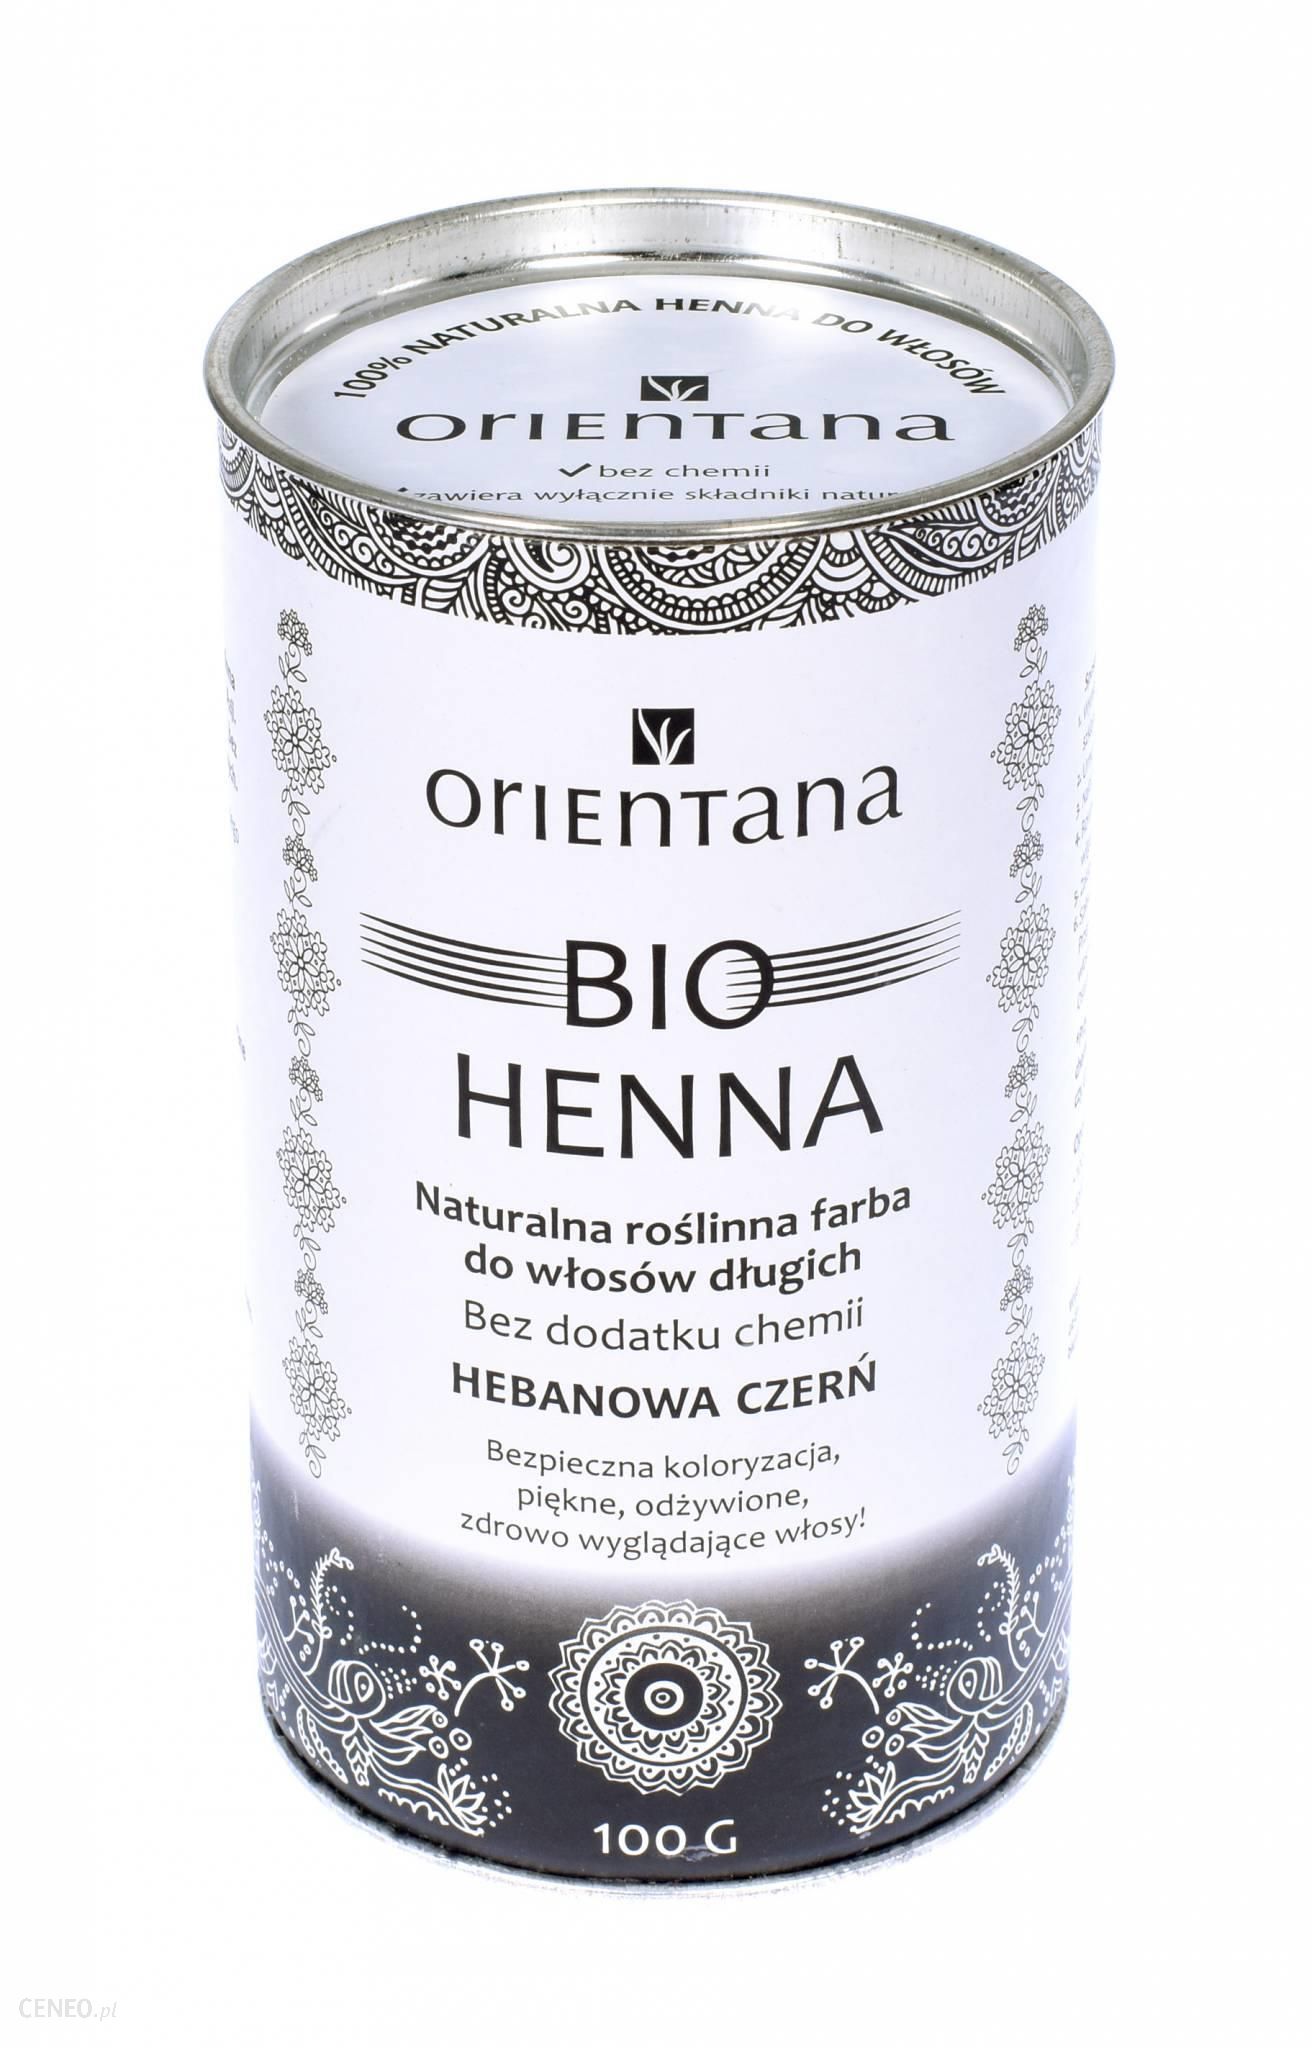 Orientana Bio Henna Hebanowa Czerń do Włosów Długich 100g